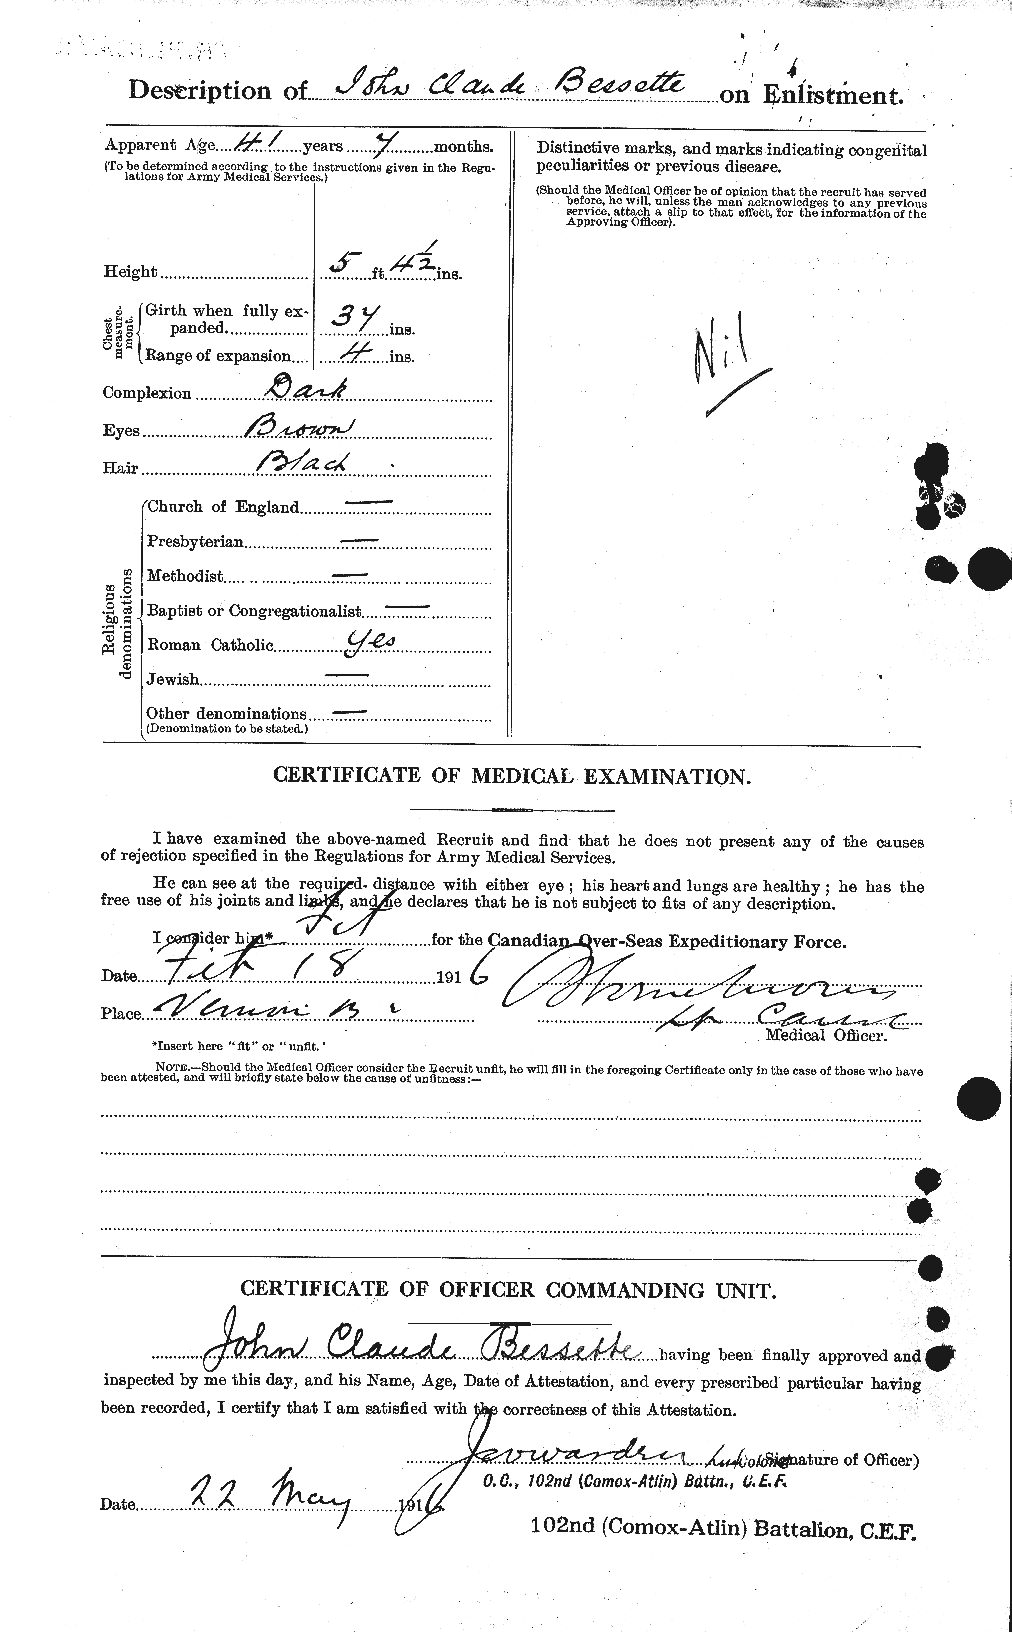 Dossiers du Personnel de la Première Guerre mondiale - CEC 240173b